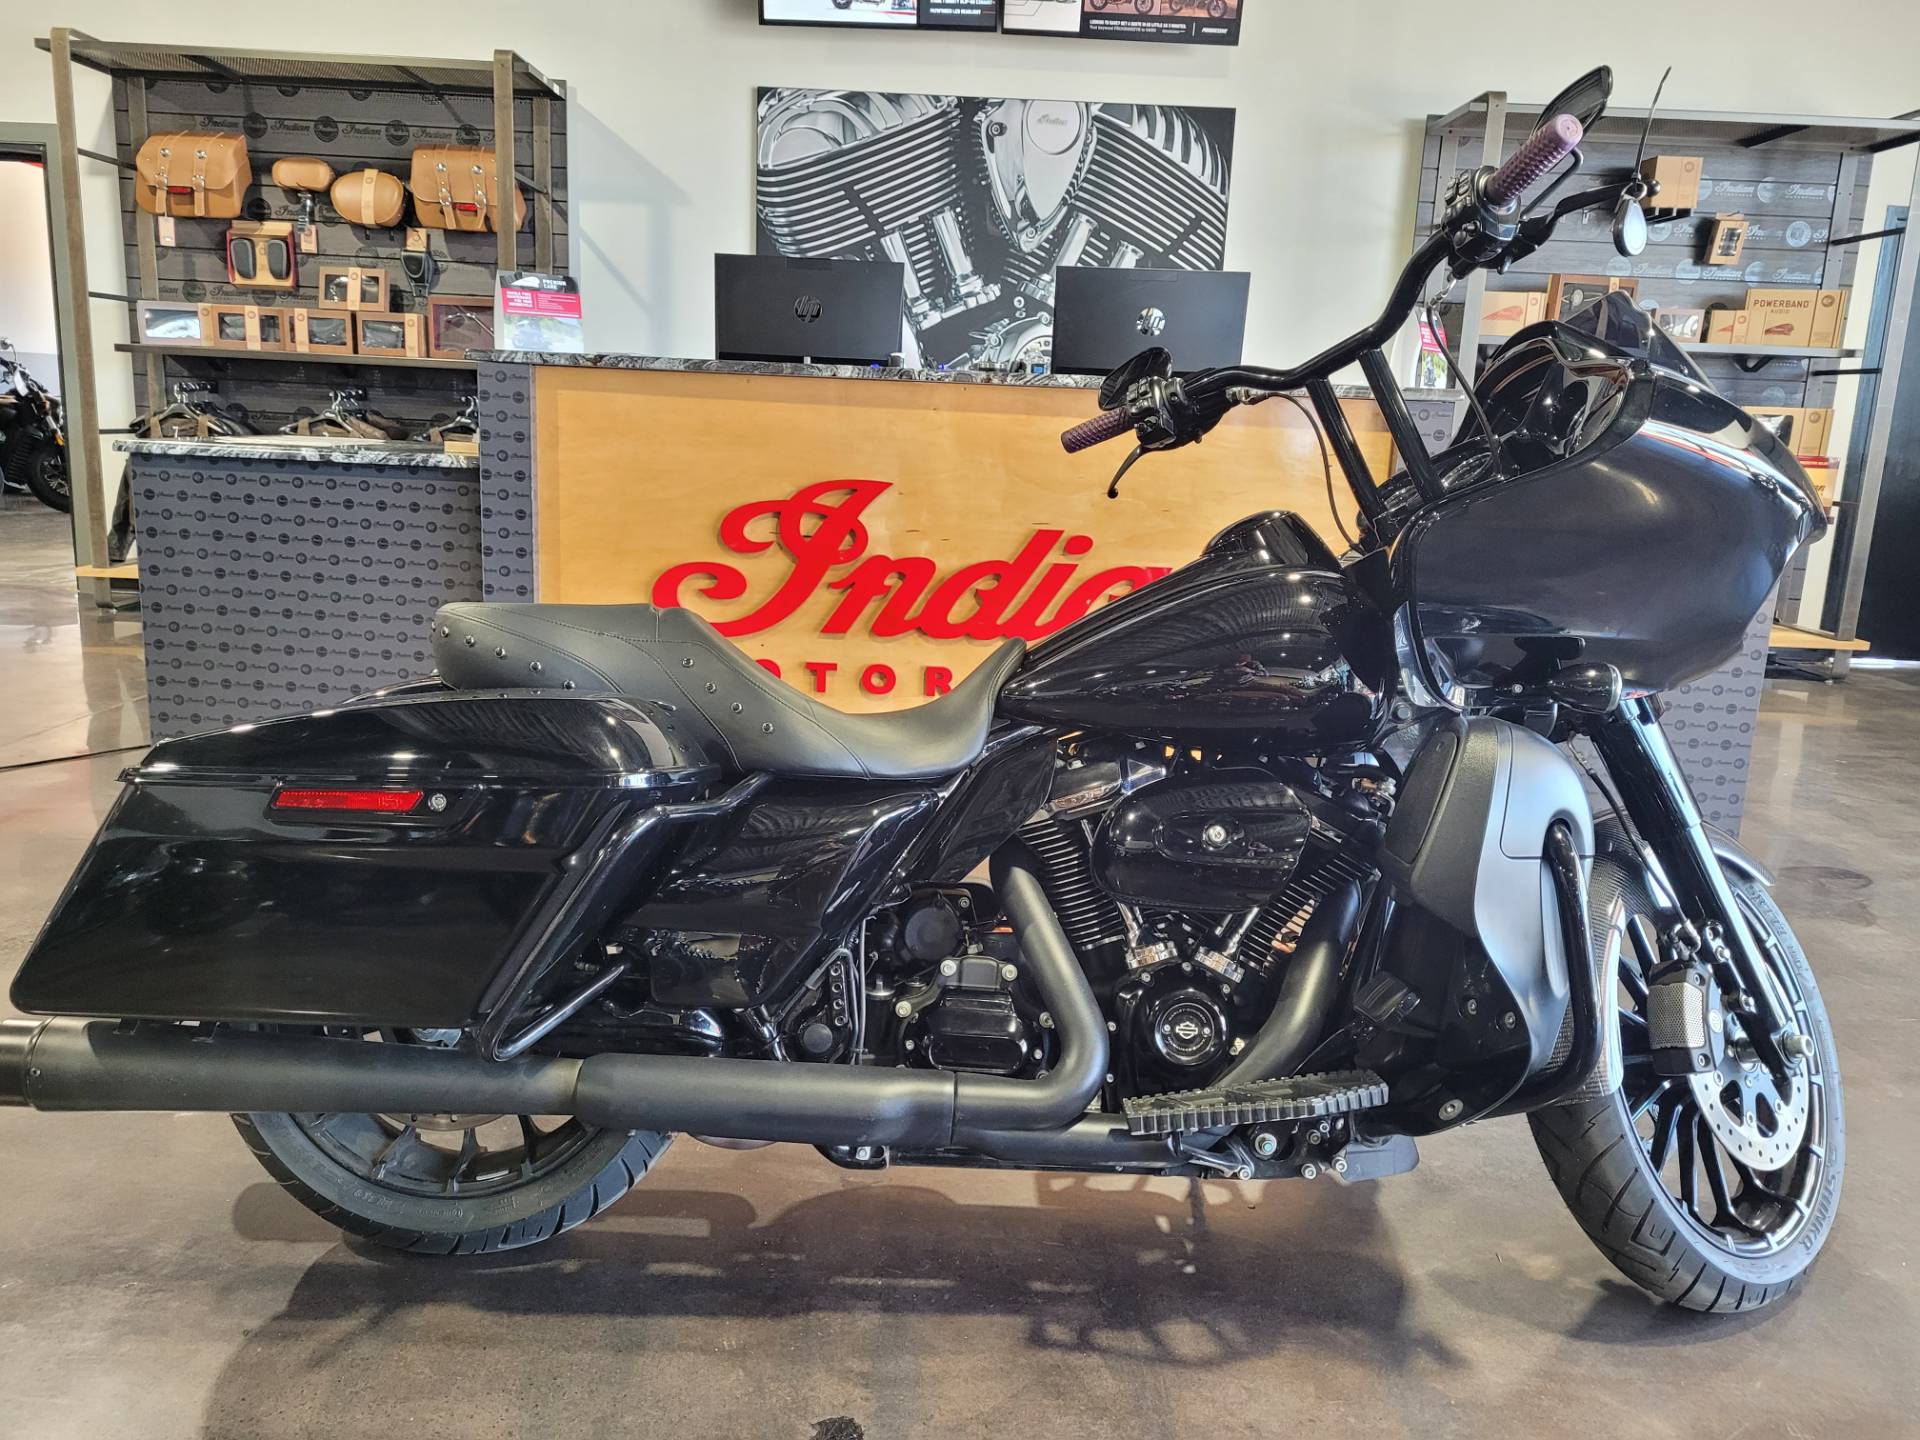 Used 2019 Harley Davidson Road Glide Special Vivid Black Motorcycles In Wilmington De Har621412